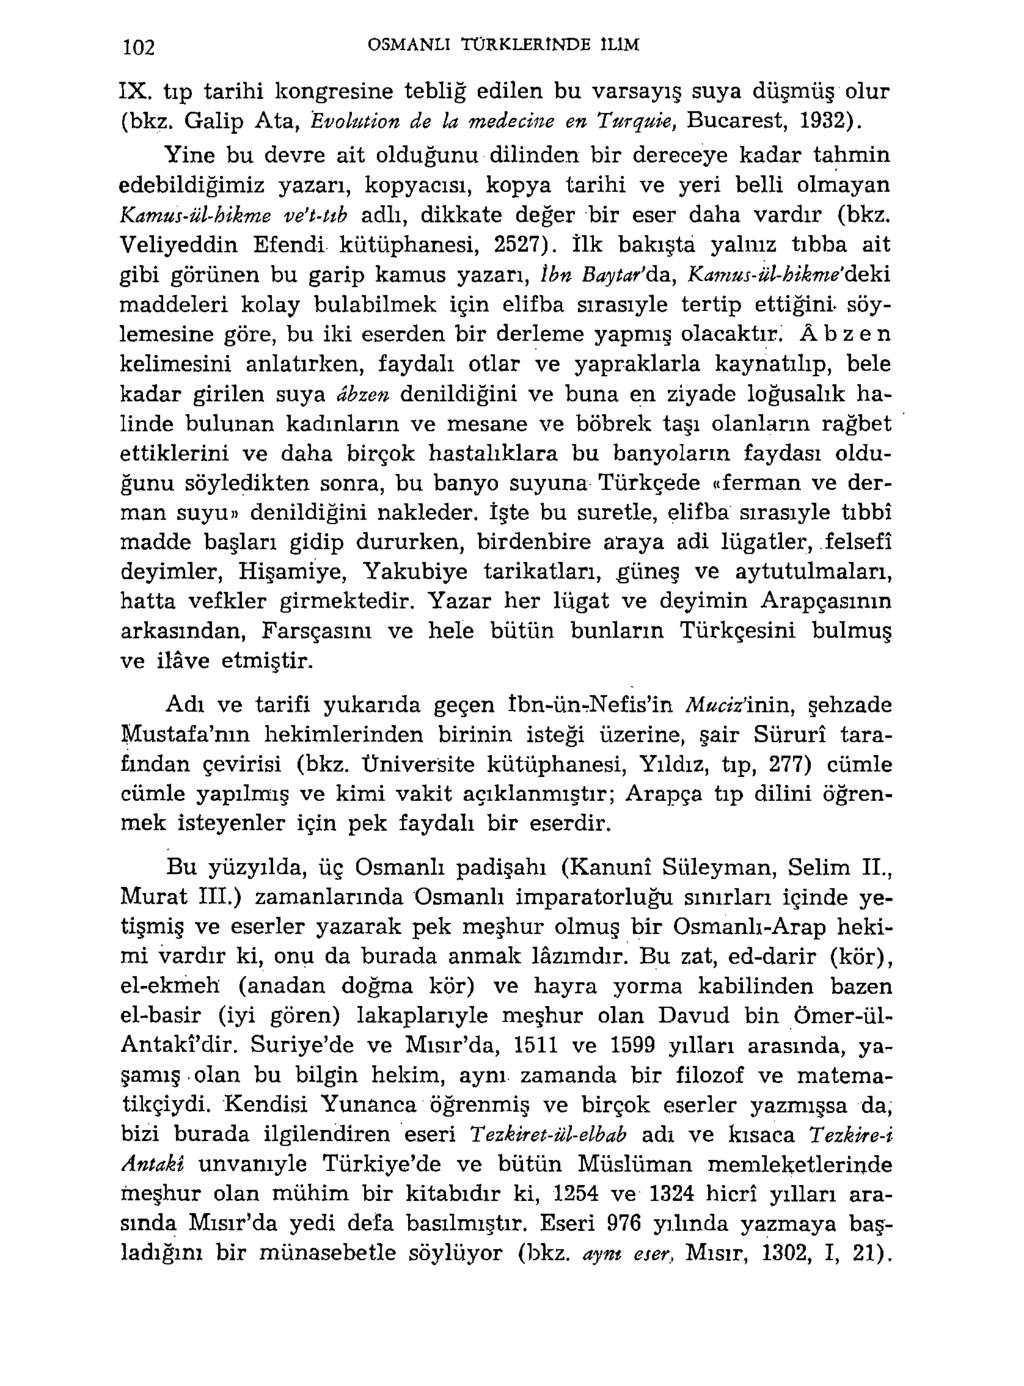 102 OSMANLI TÜRKLERINDE ILIM IX. tıp tarihi kongresine tebliğ edilen bu varsayış suya düşmüş olur (bkz. Galip Ata, Evoluüon de la medetine en Turquie, Bucarest, 1932).